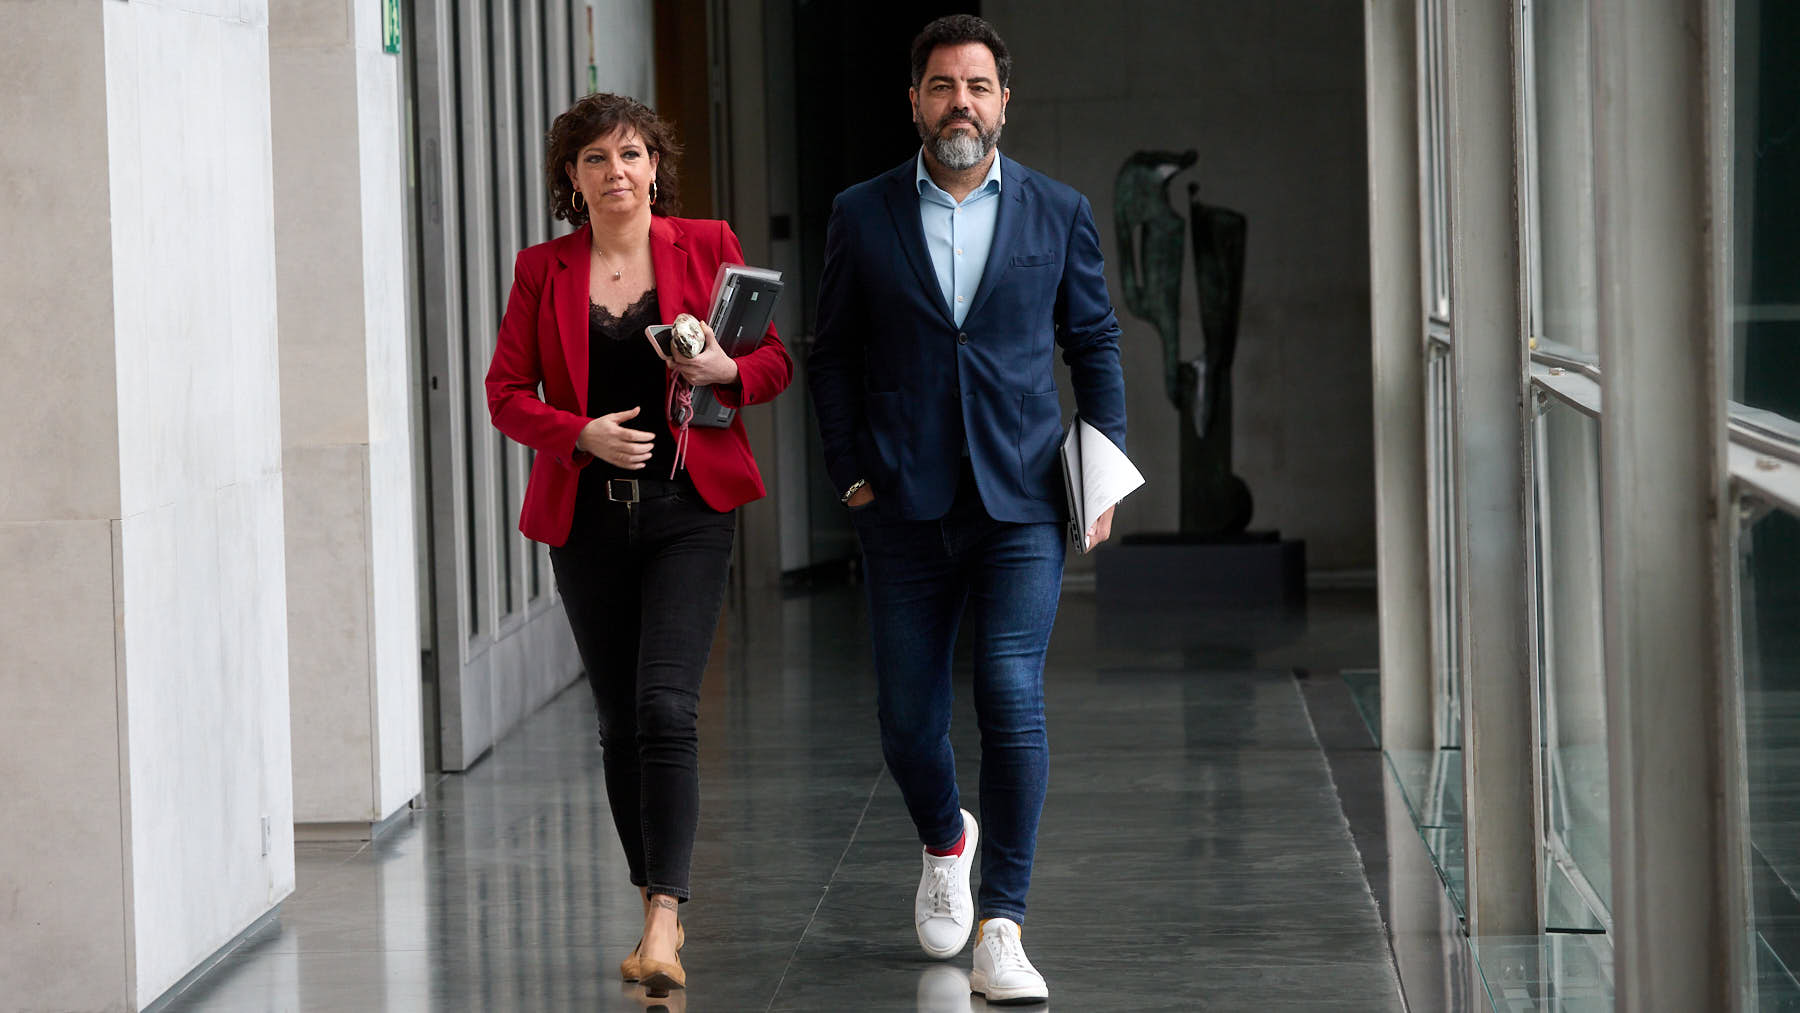 El PSOE avala el acoso y los insultos a Vox en Navarra y se niega a condenarlos